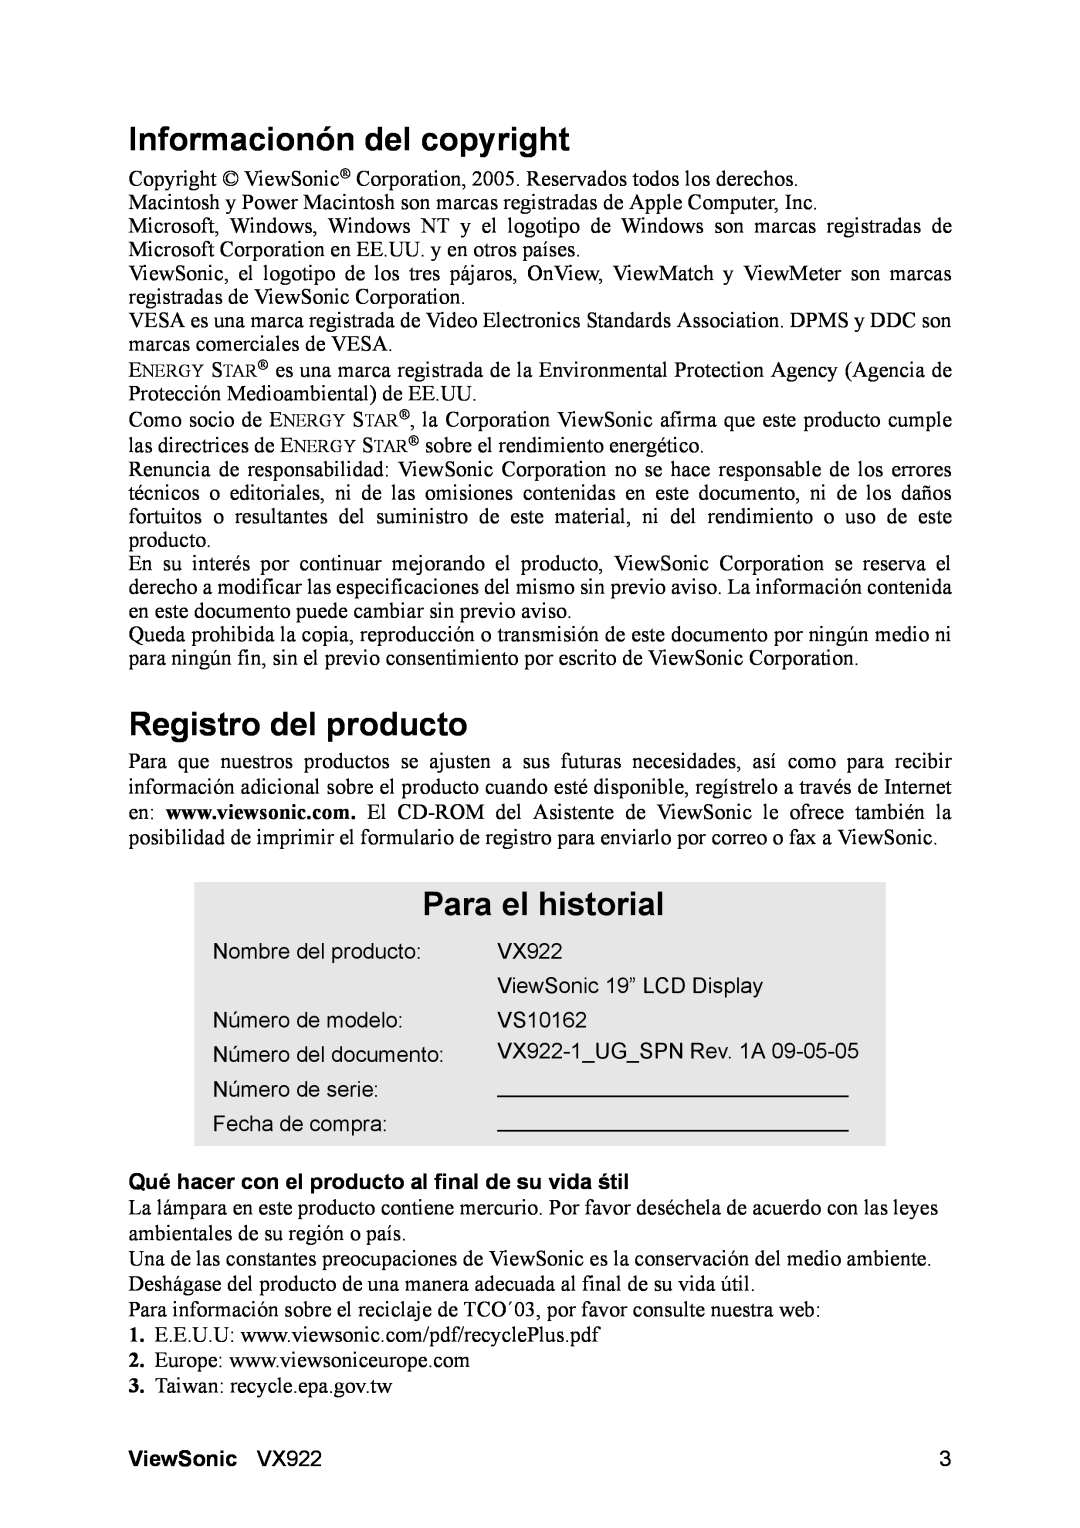 ViewSonic VX922 manual Informacionón del copyright, Registro del producto, Para el historial, ViewSonic 